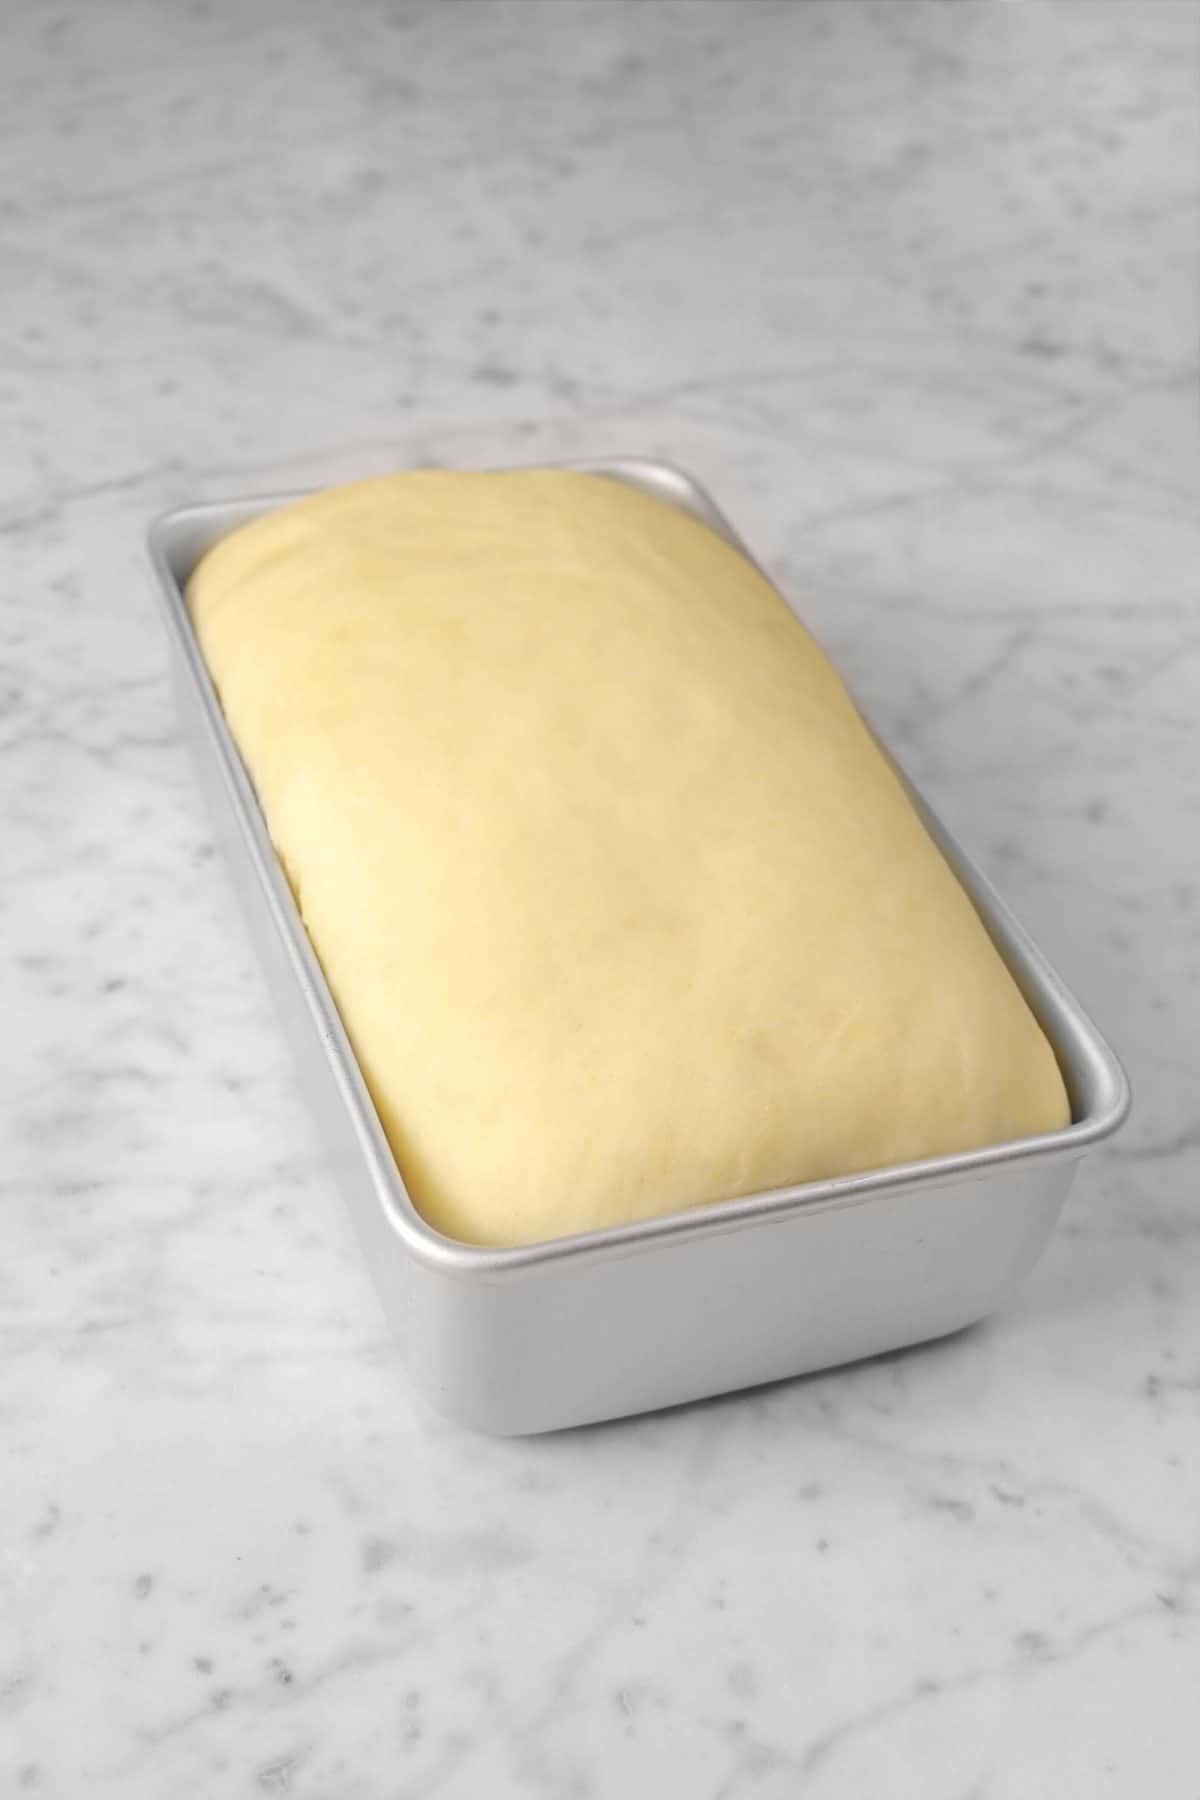 bread dough doubled in bulk in loaf pan